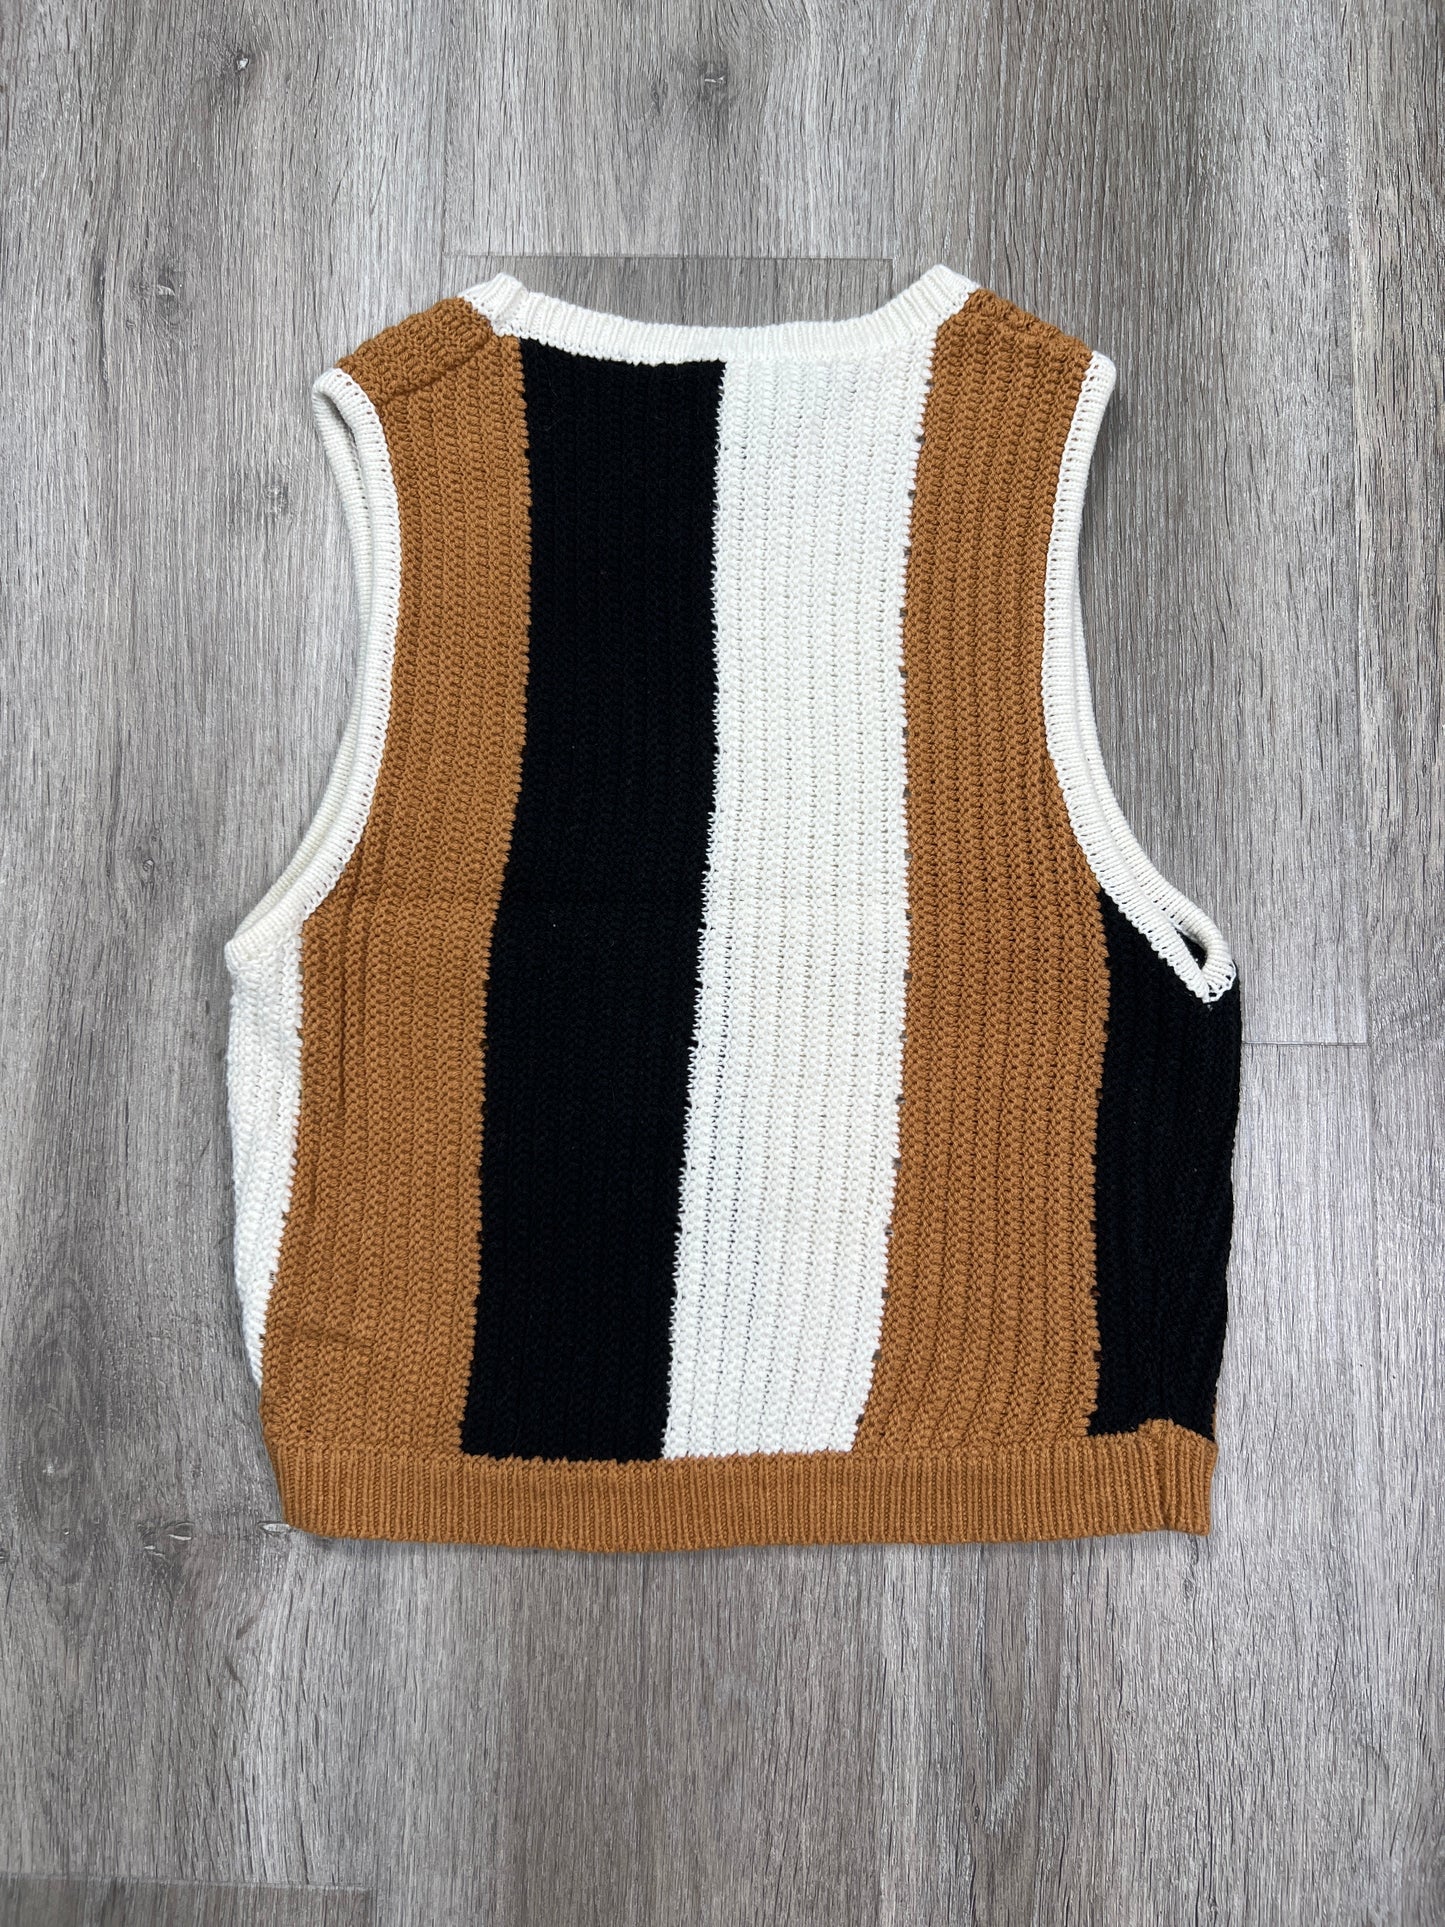 Black & Cream Vest Sweater Le Lis, Size S